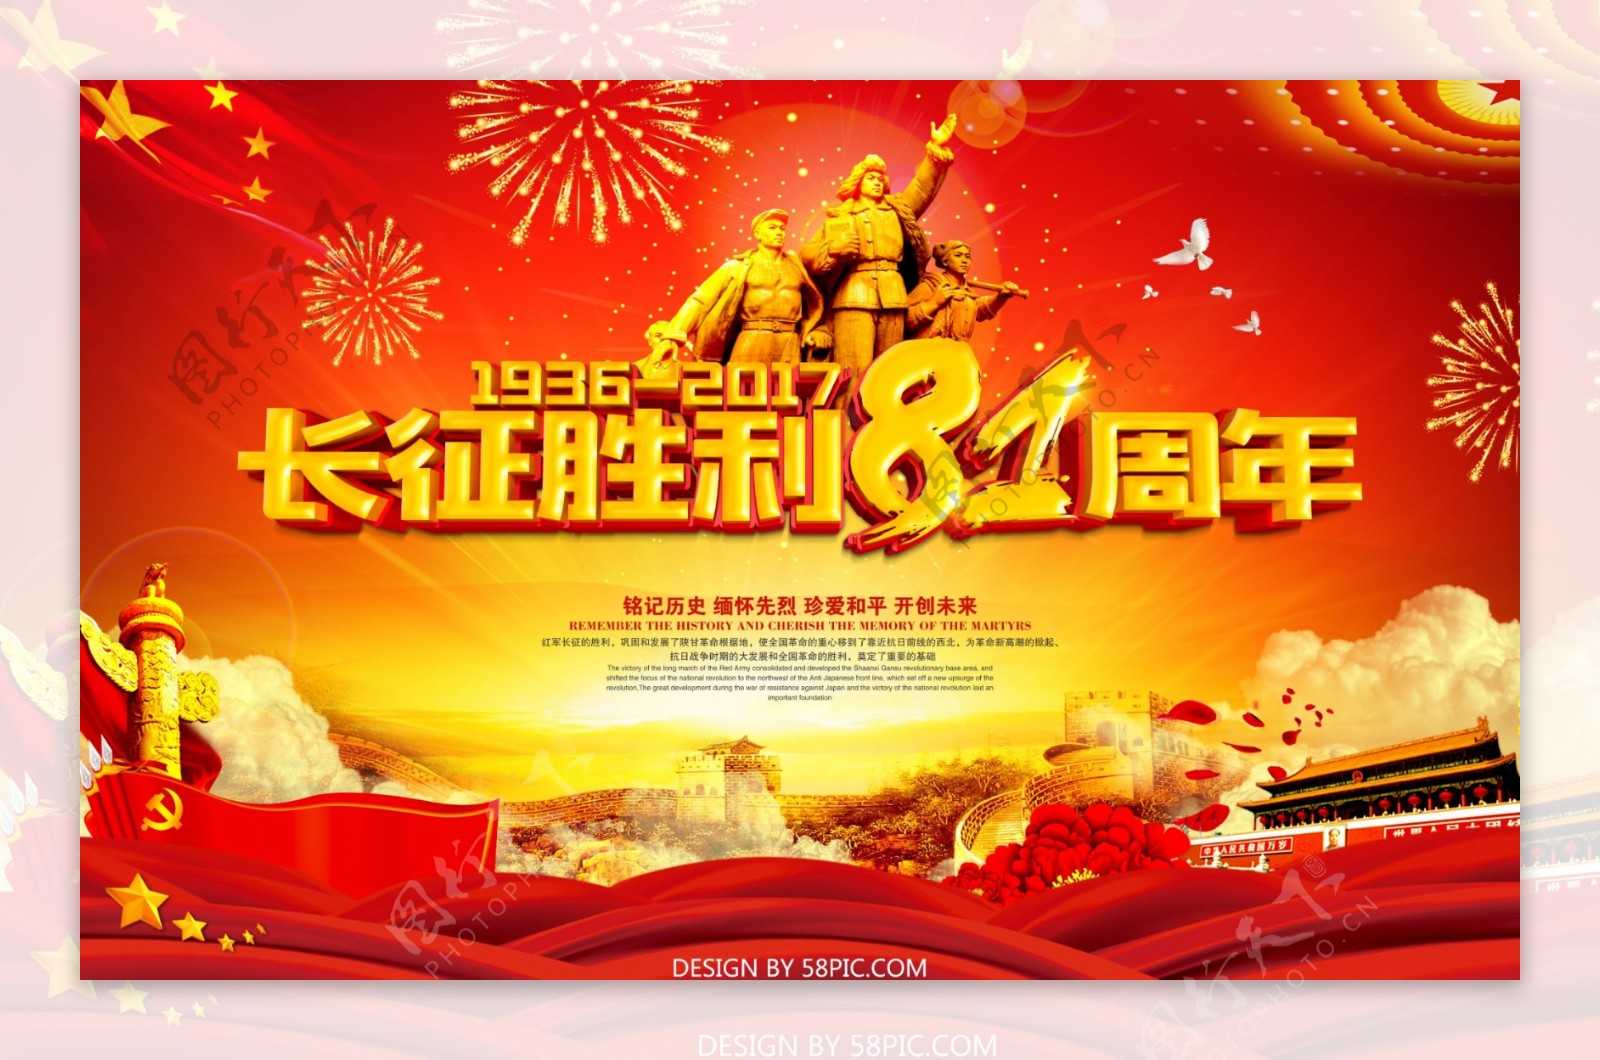 红色背景大气长征胜利81周年海报设计